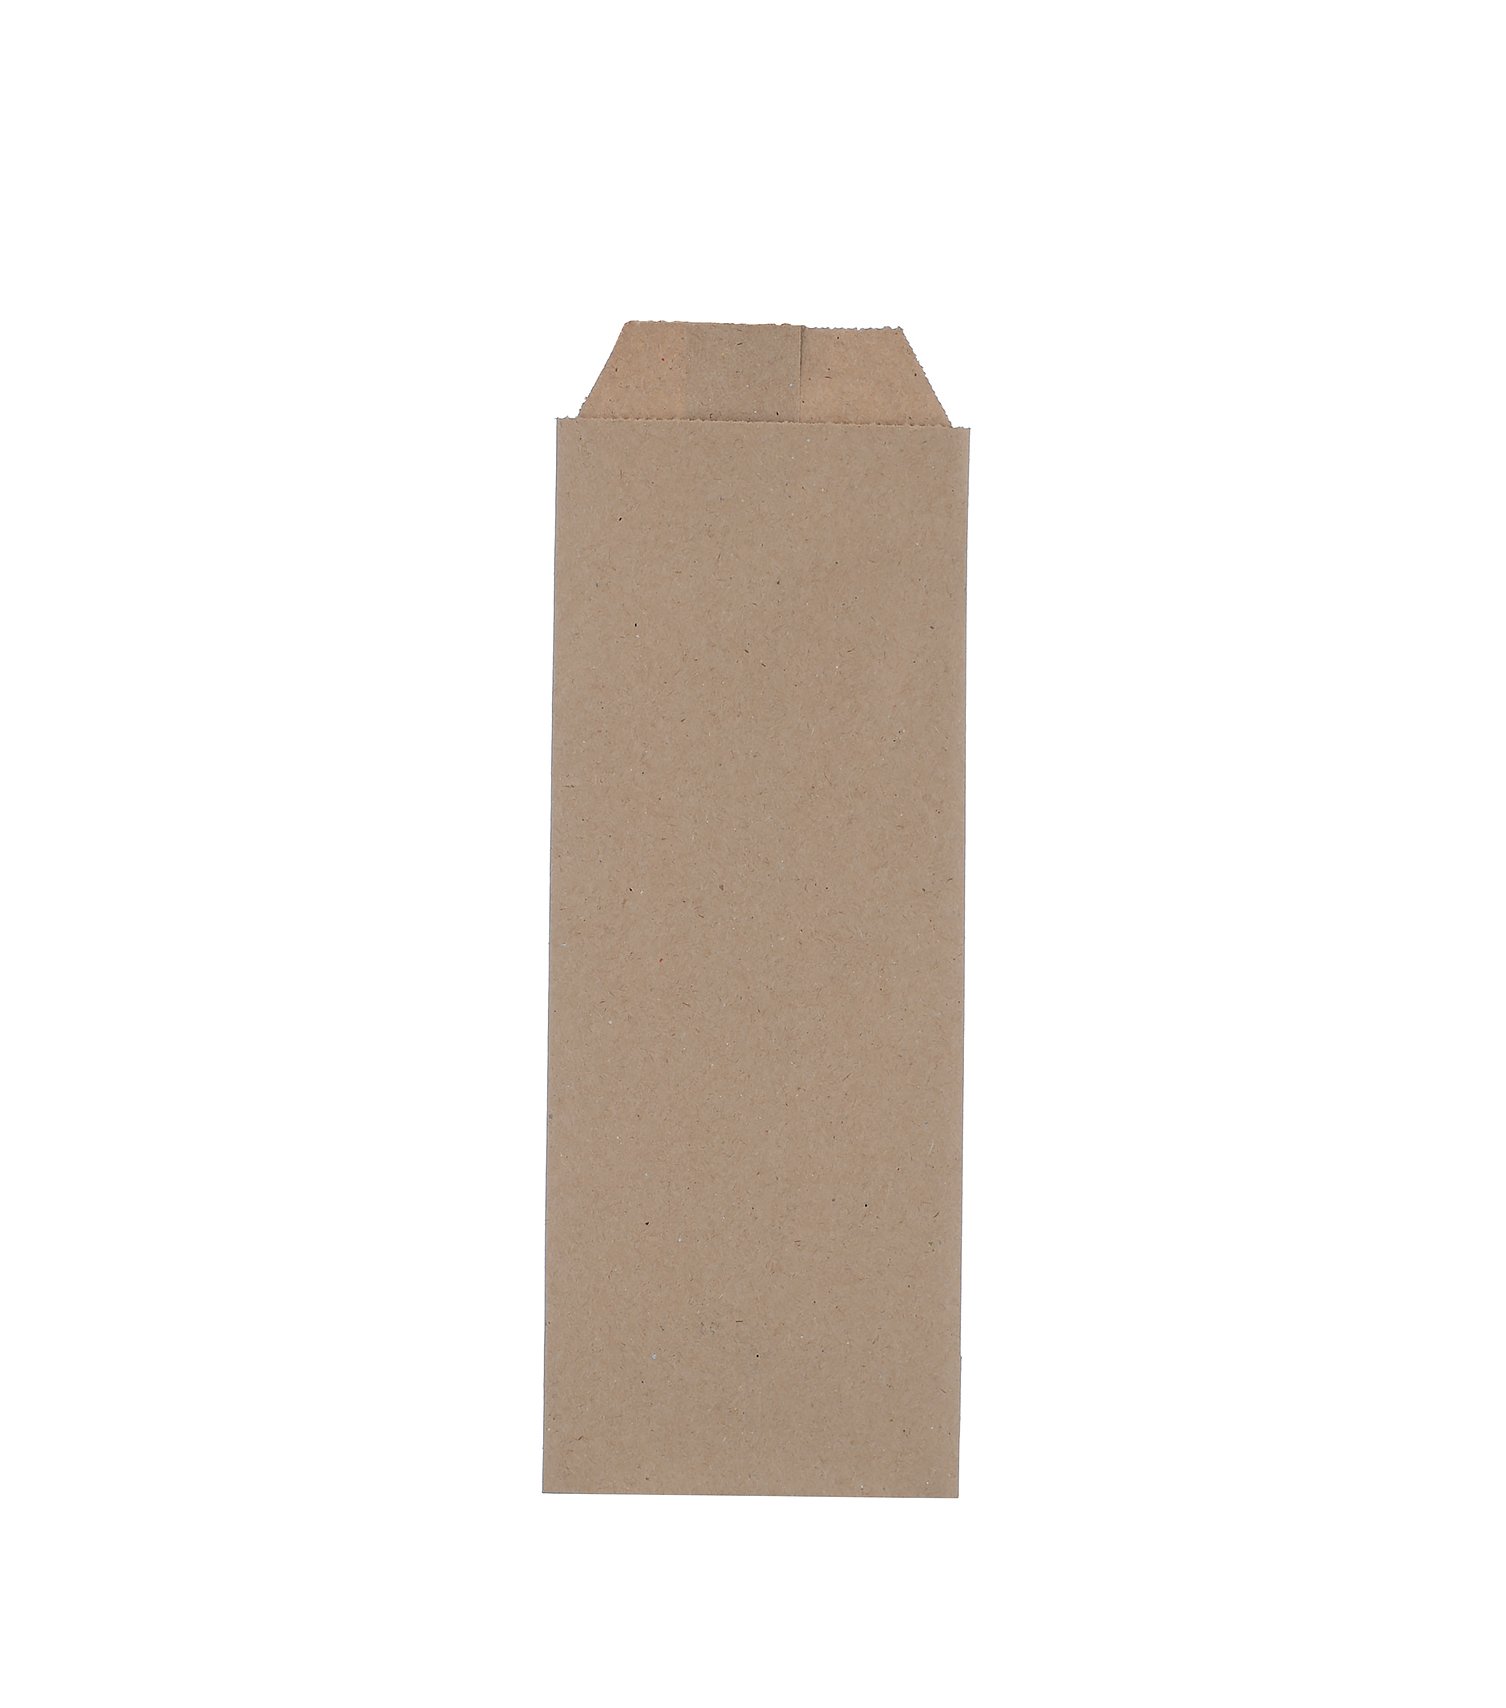 Бумажный пакет с клапаном в форме конверта подходит для упаковки легких покупок, а также сохранить окружающую среду, благодаря использованию экологически чистых материалов. Размер пакета 80х220 мм. Изготовлен из крафтовой бумаги. Цвет коричневый. В упаковке 2000 штук.